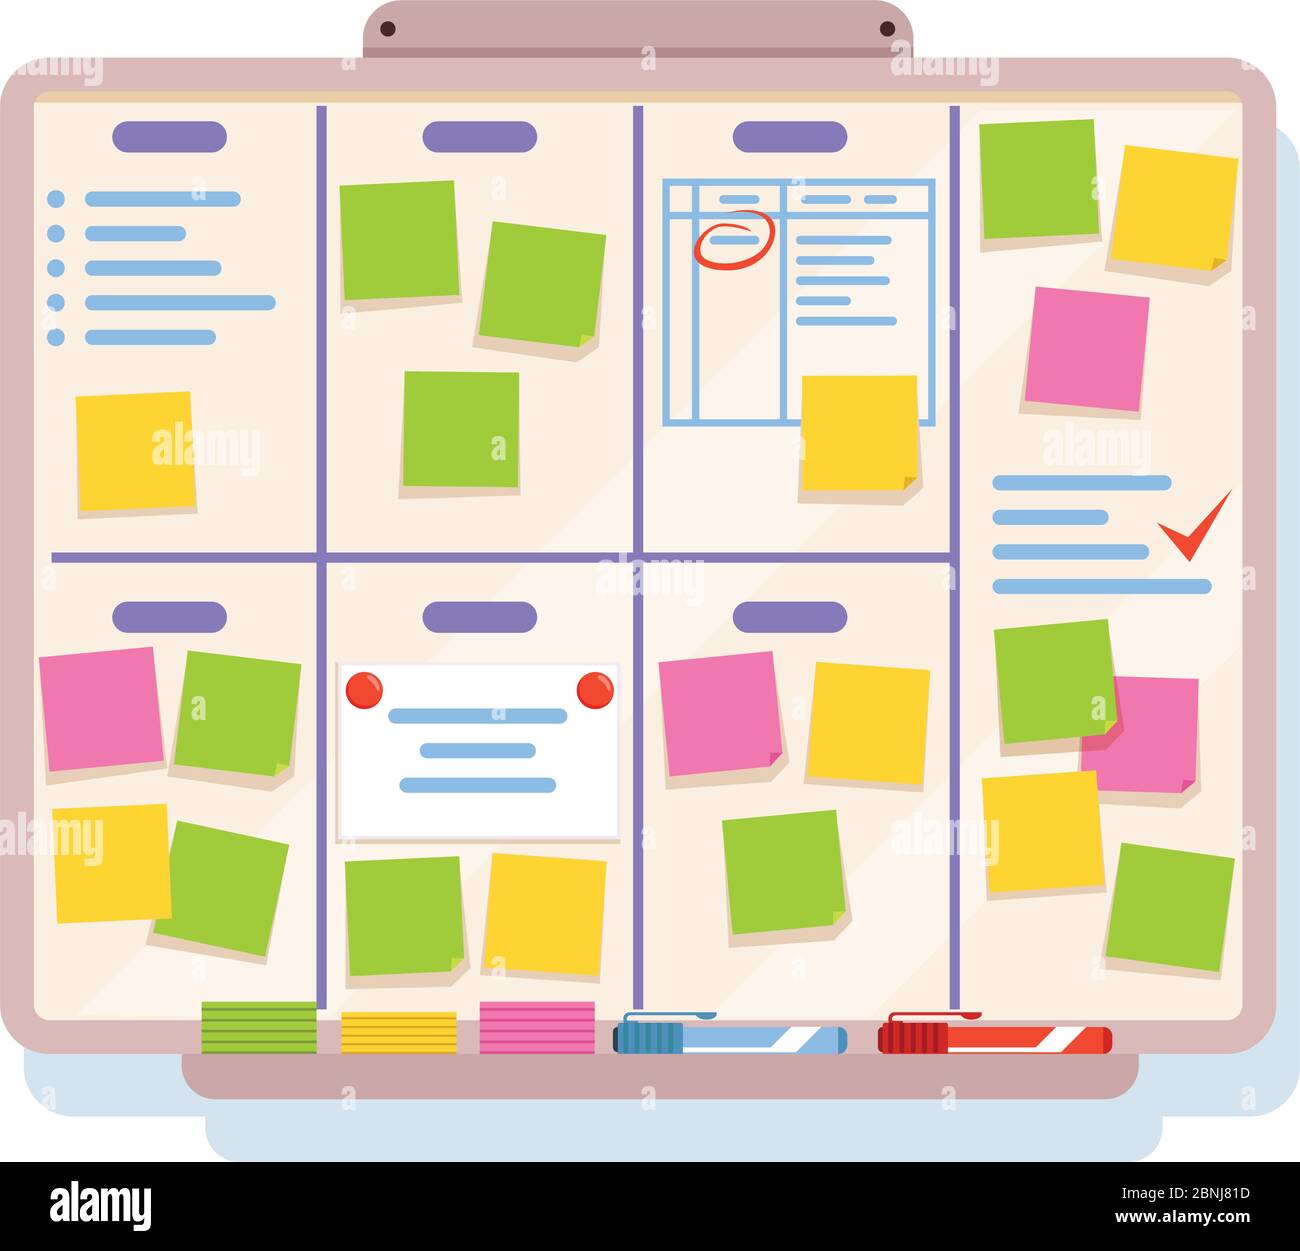 Tafel für Planung mit verschiedenen Aufgaben, geschrieben auf farbigen Papieren Stock Vektor